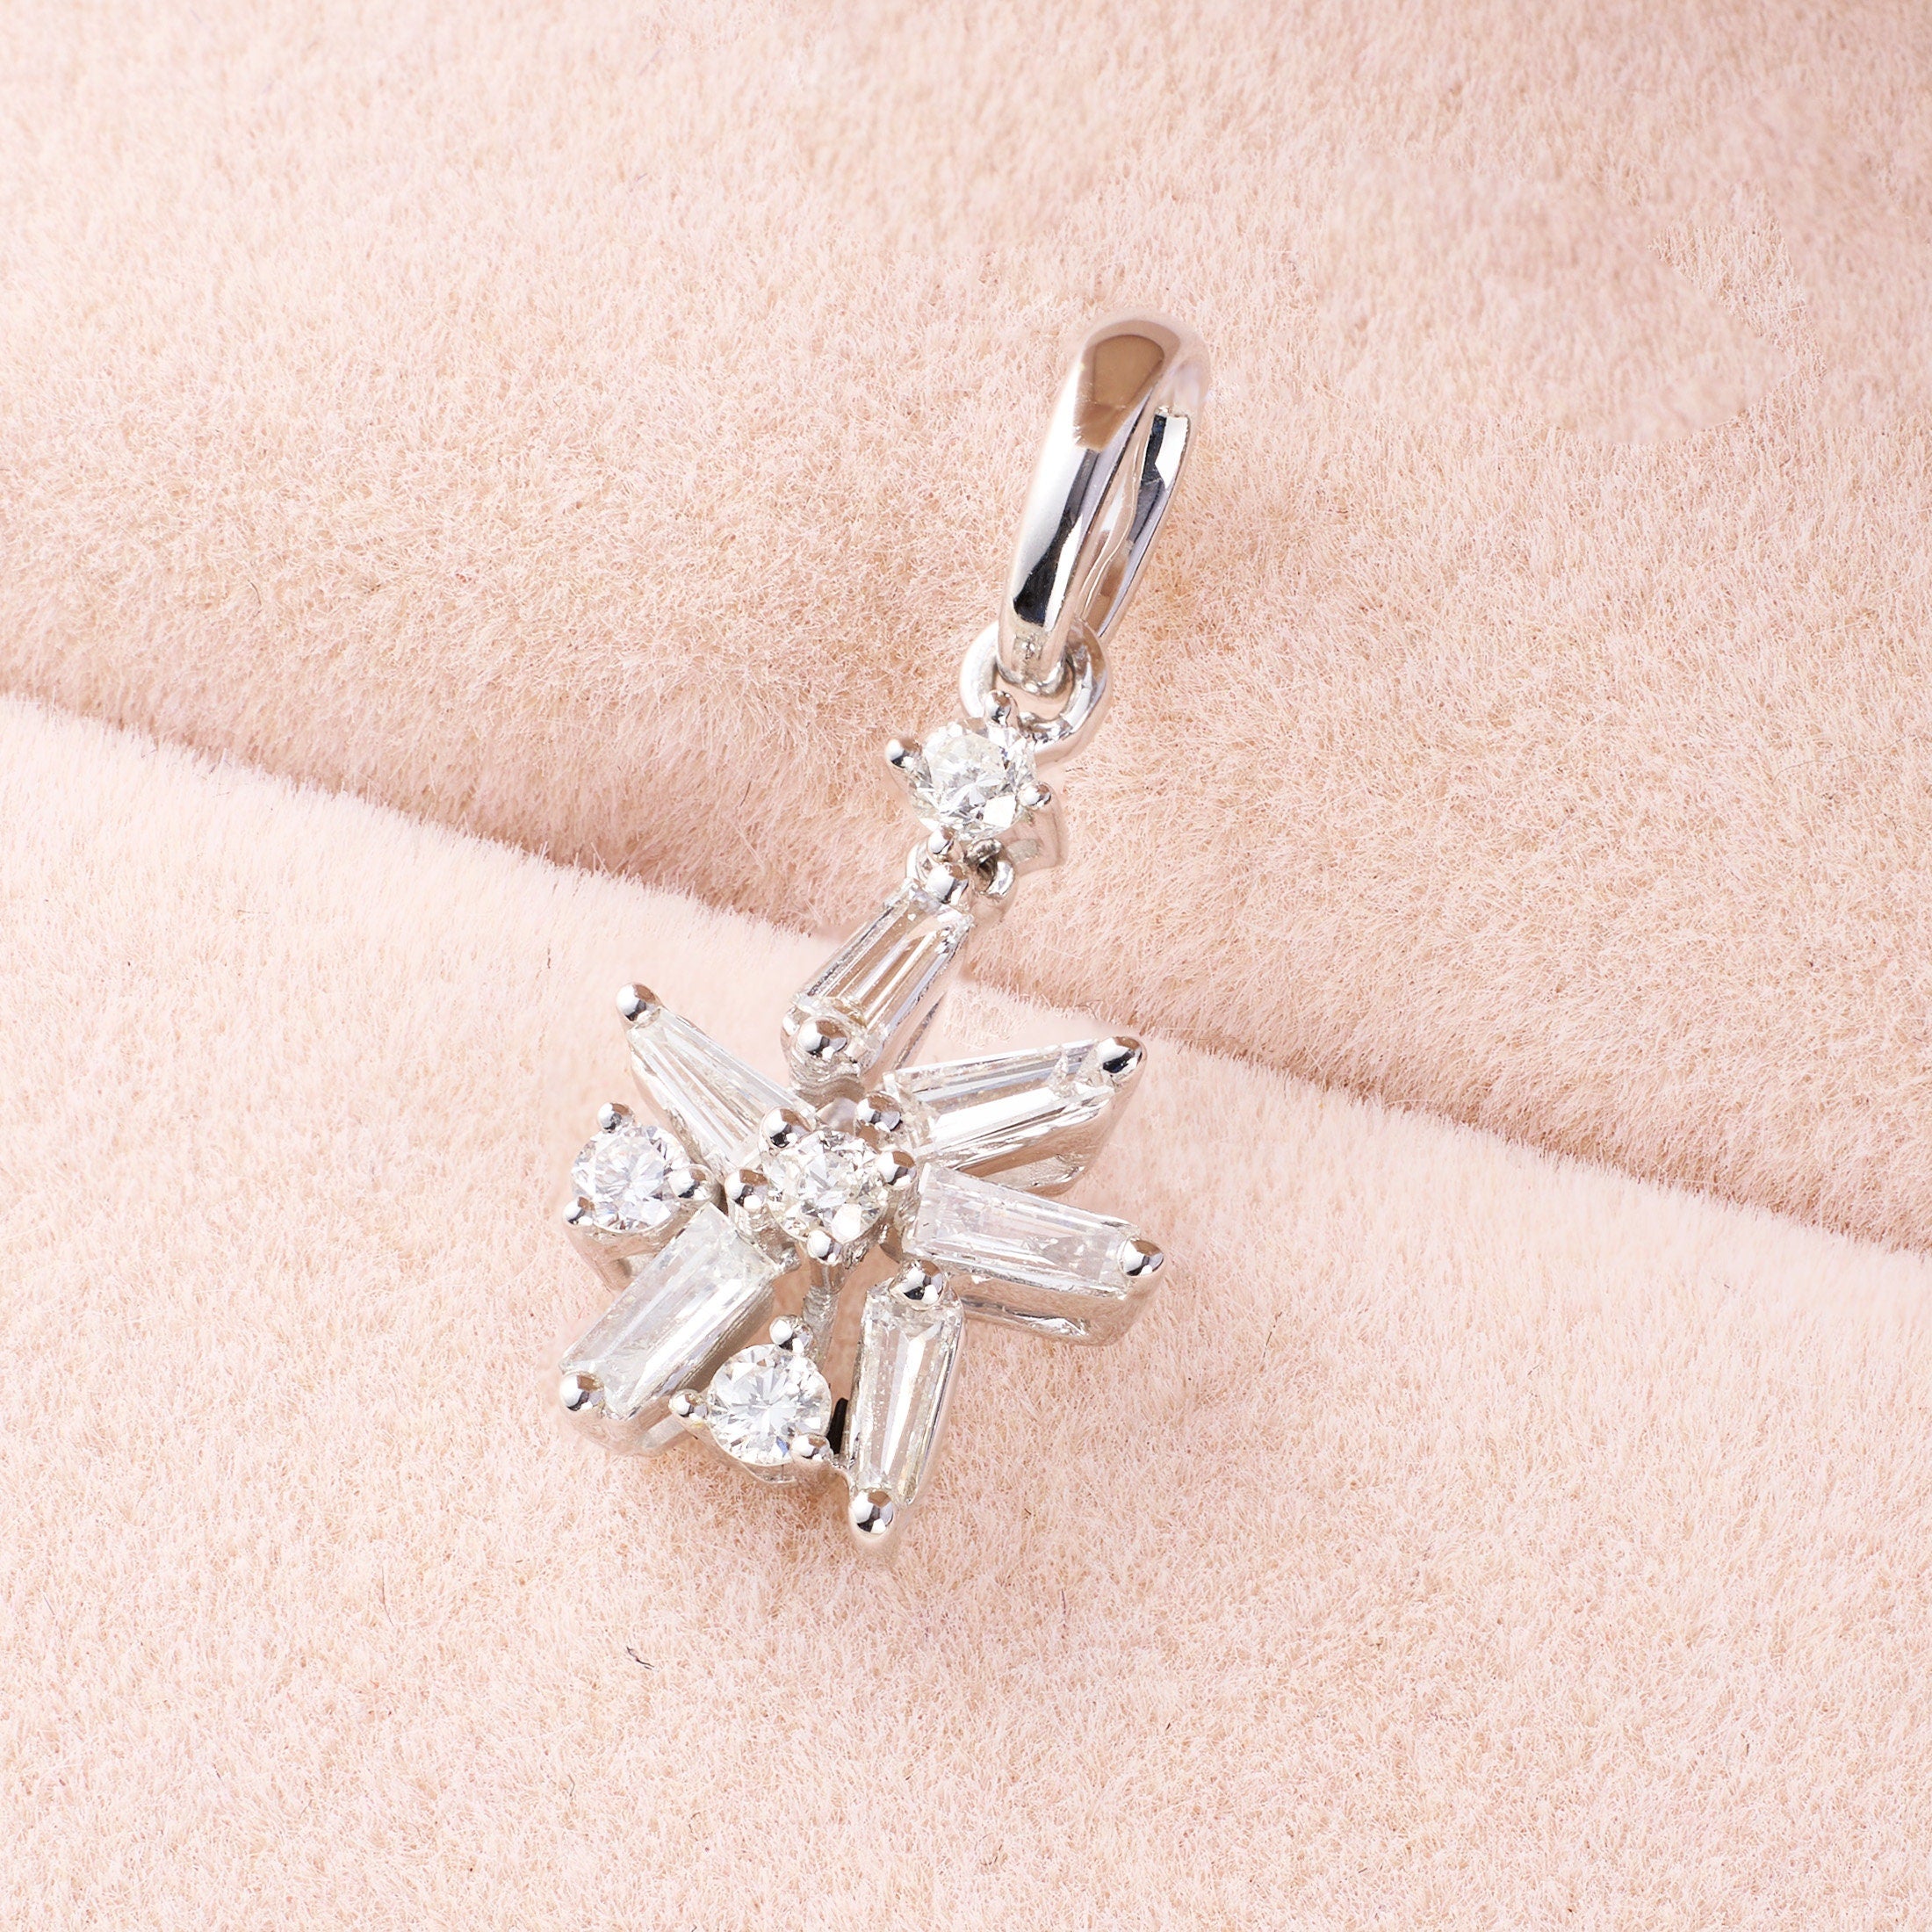 Snowflakes Pendant with Diamonds &amp; Sapphires